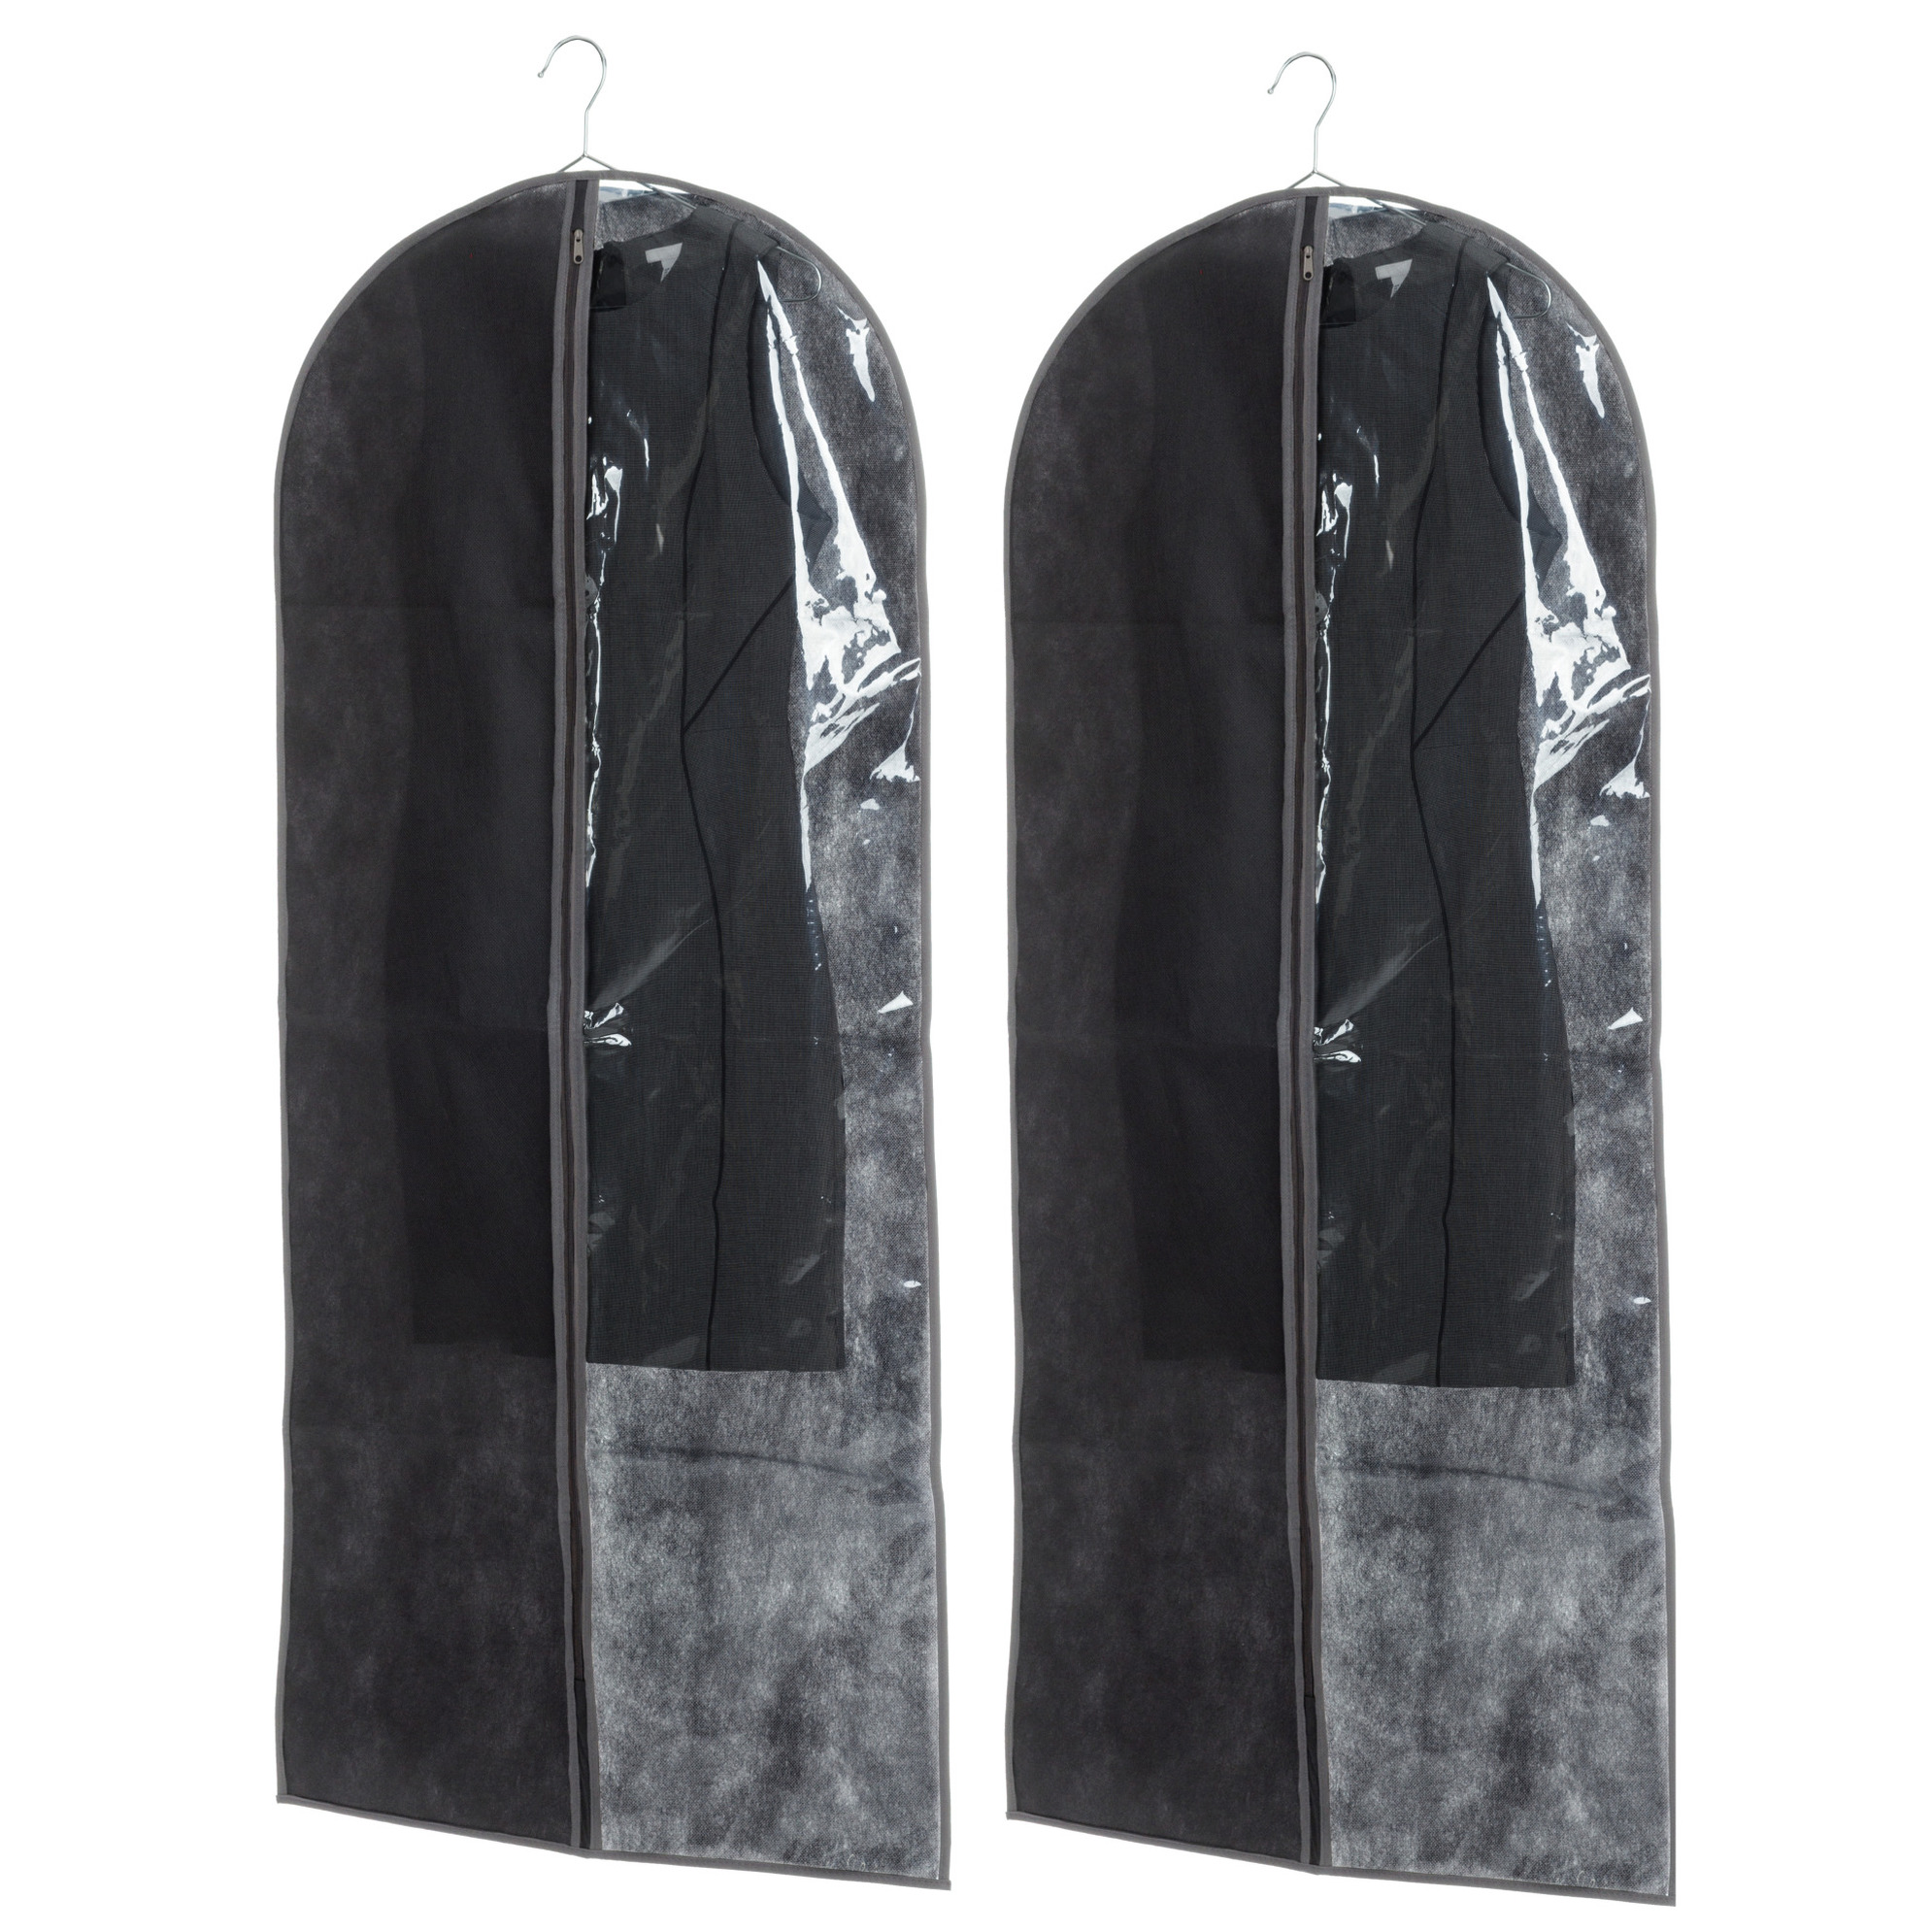 Set van 10x stuks kleding-beschermhoezen pp zwart 135 cm inclusief kledinghangers